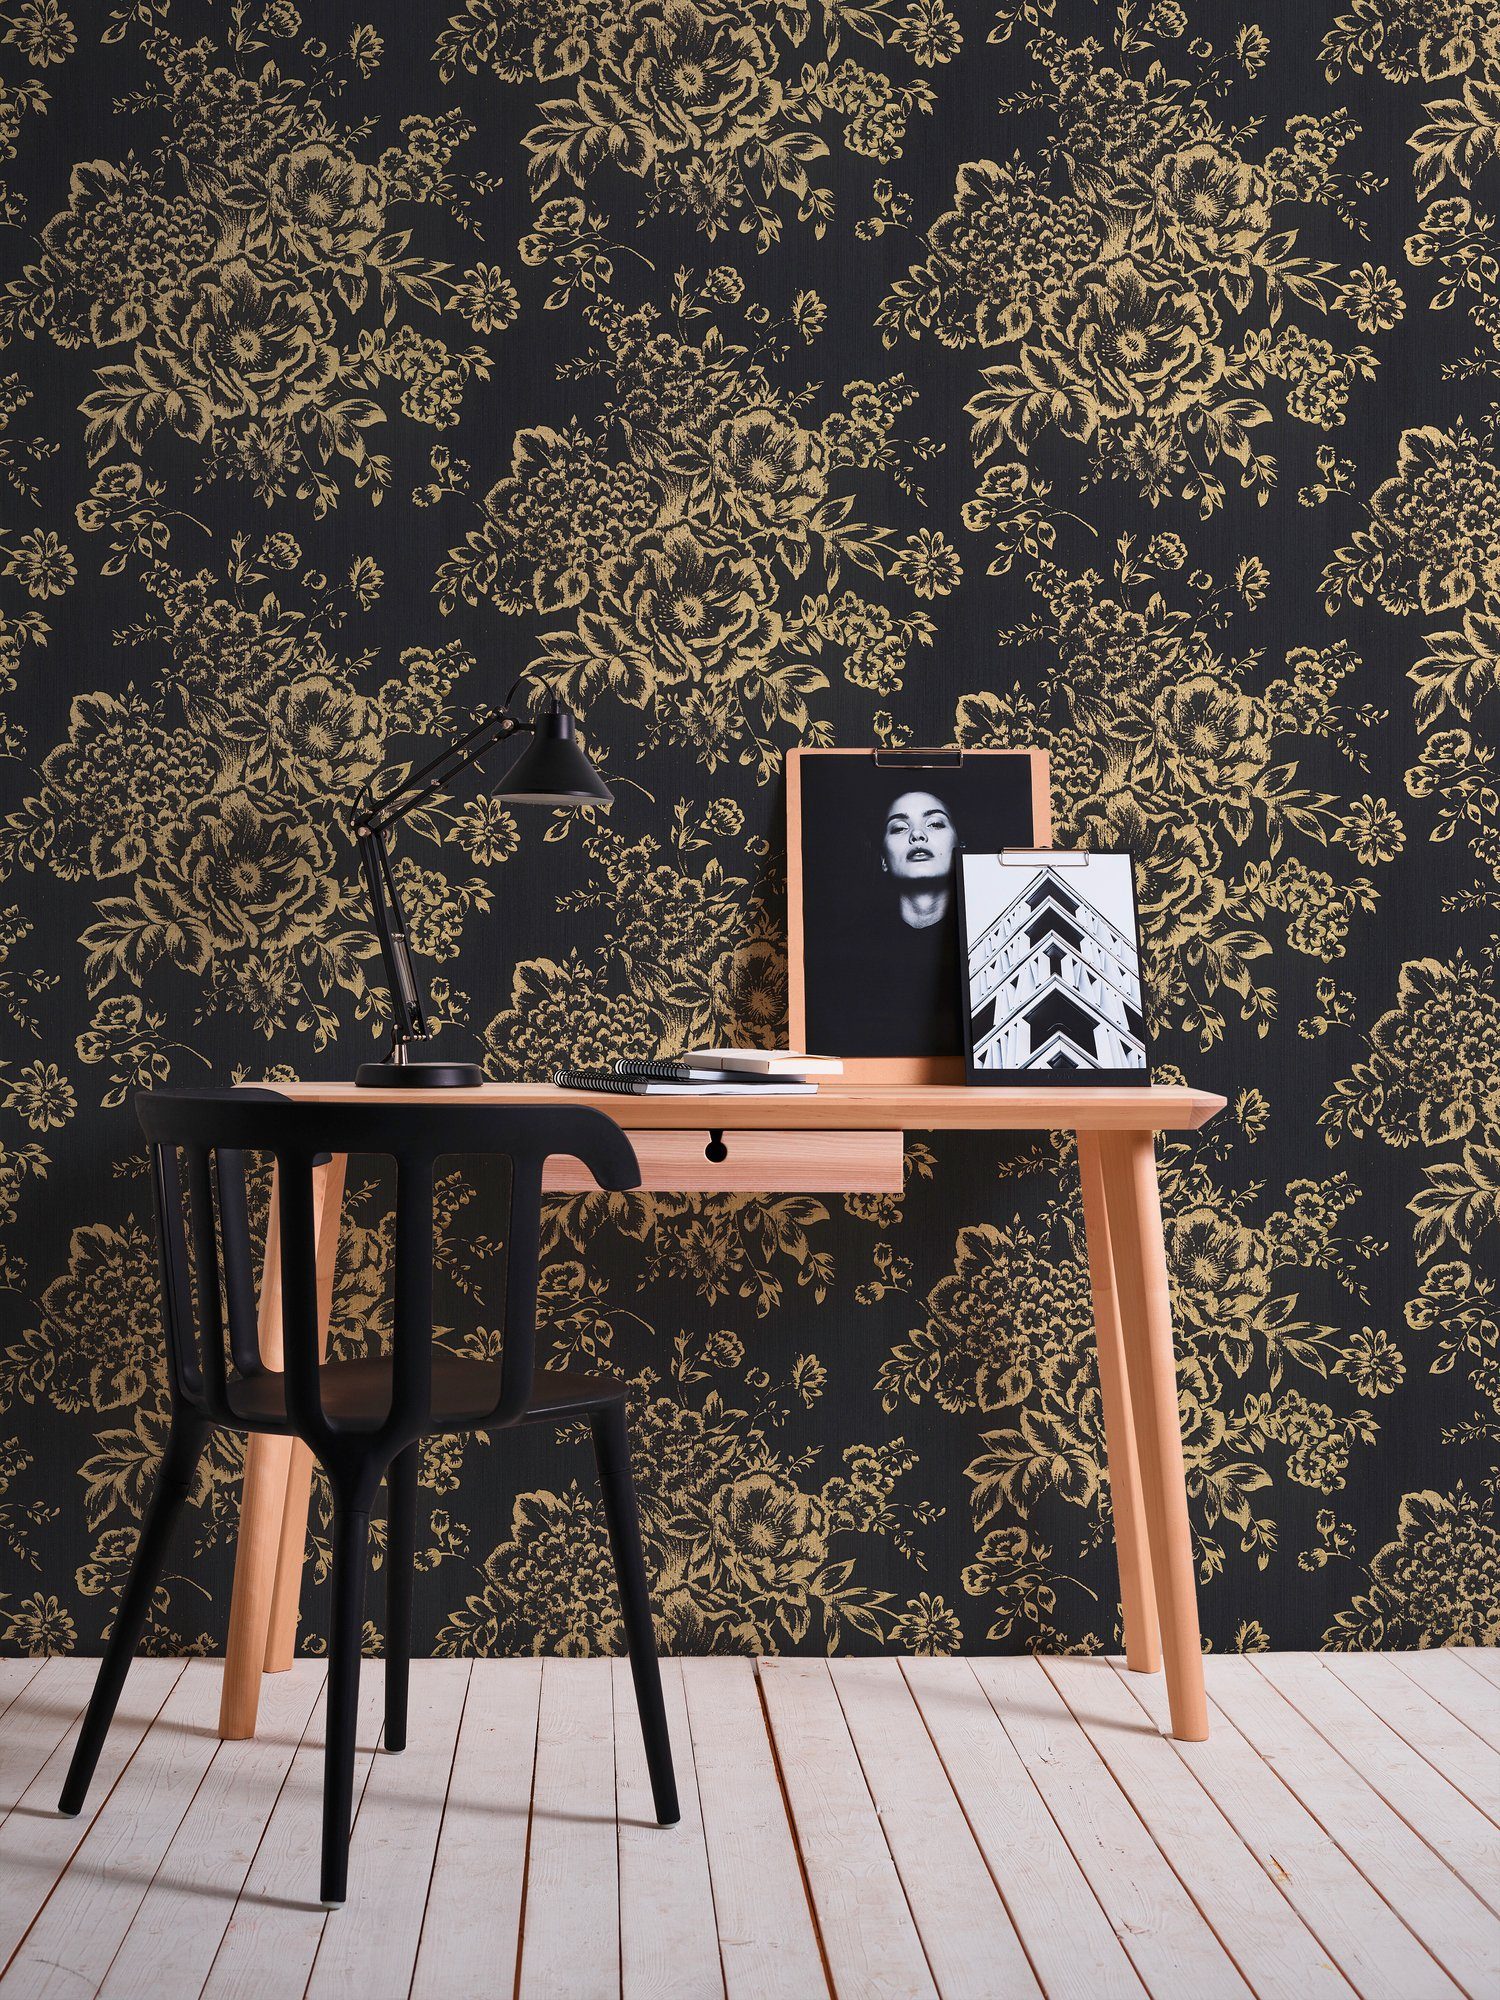 Silk, Metallic floral, Paper Architects samtig, glänzend, Tapete gold/schwarz Blumen Textiltapete matt, Barocktapete